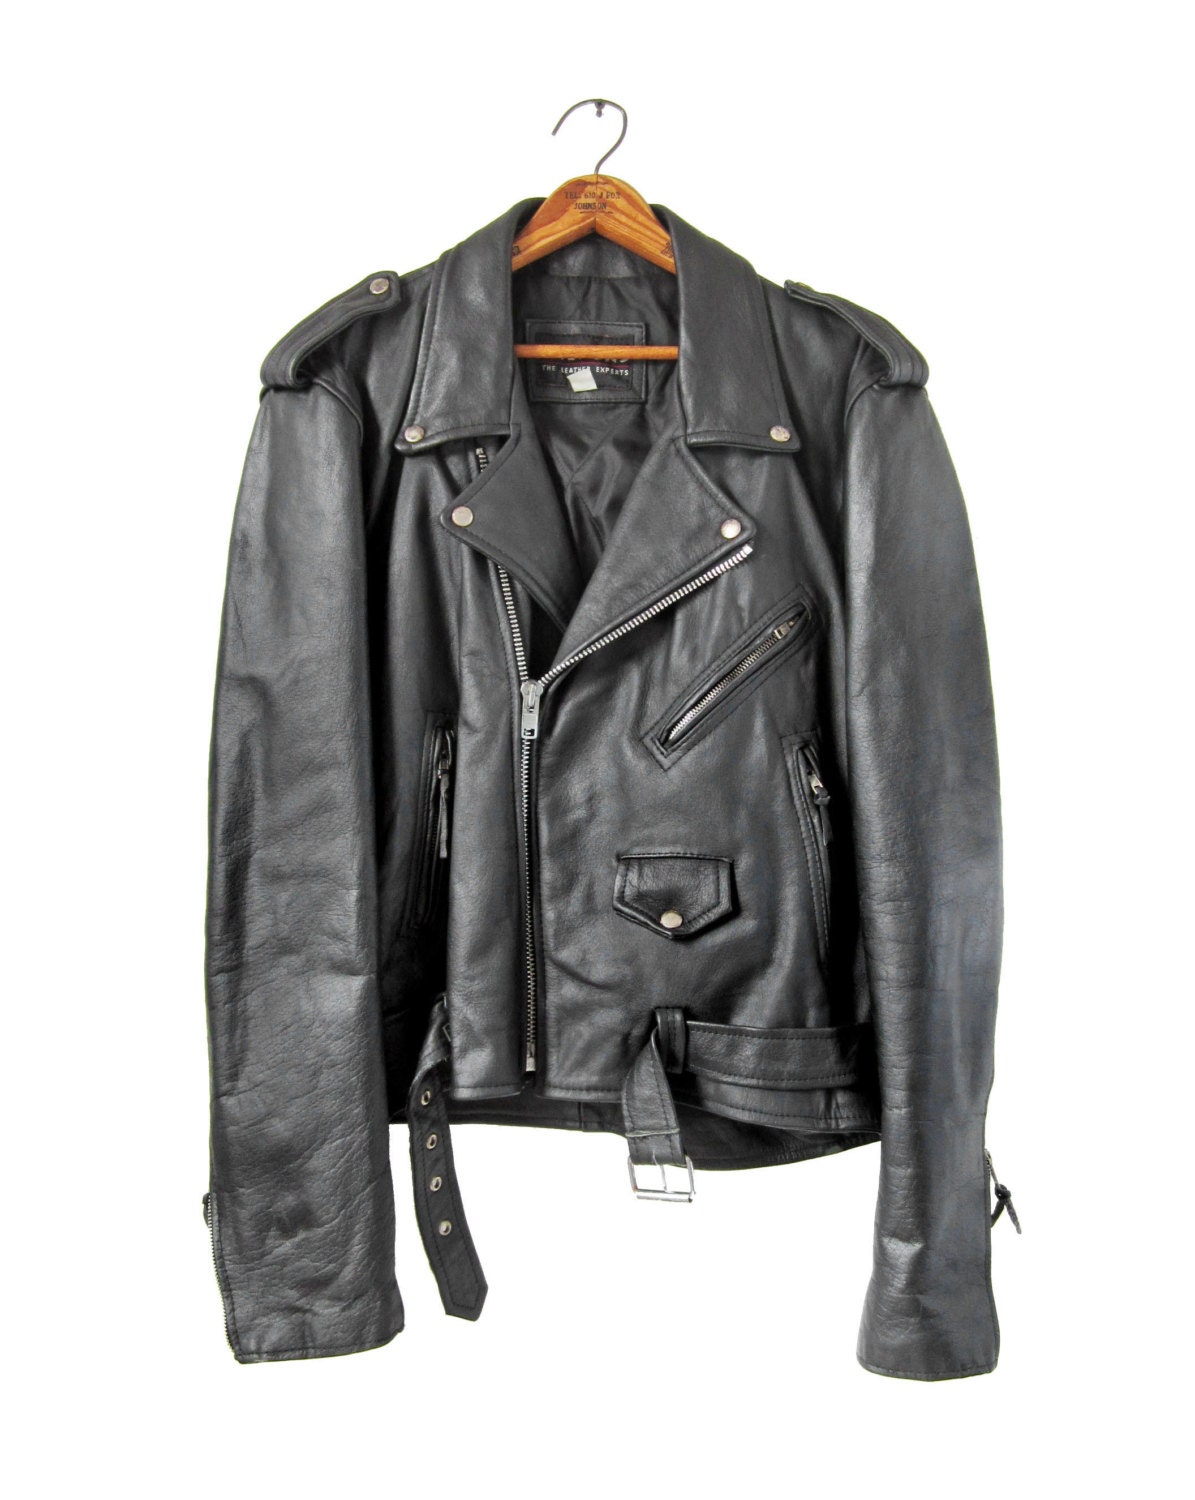 Vintage Black Leather Motorcycle Jacket 80s Wilsons Biker